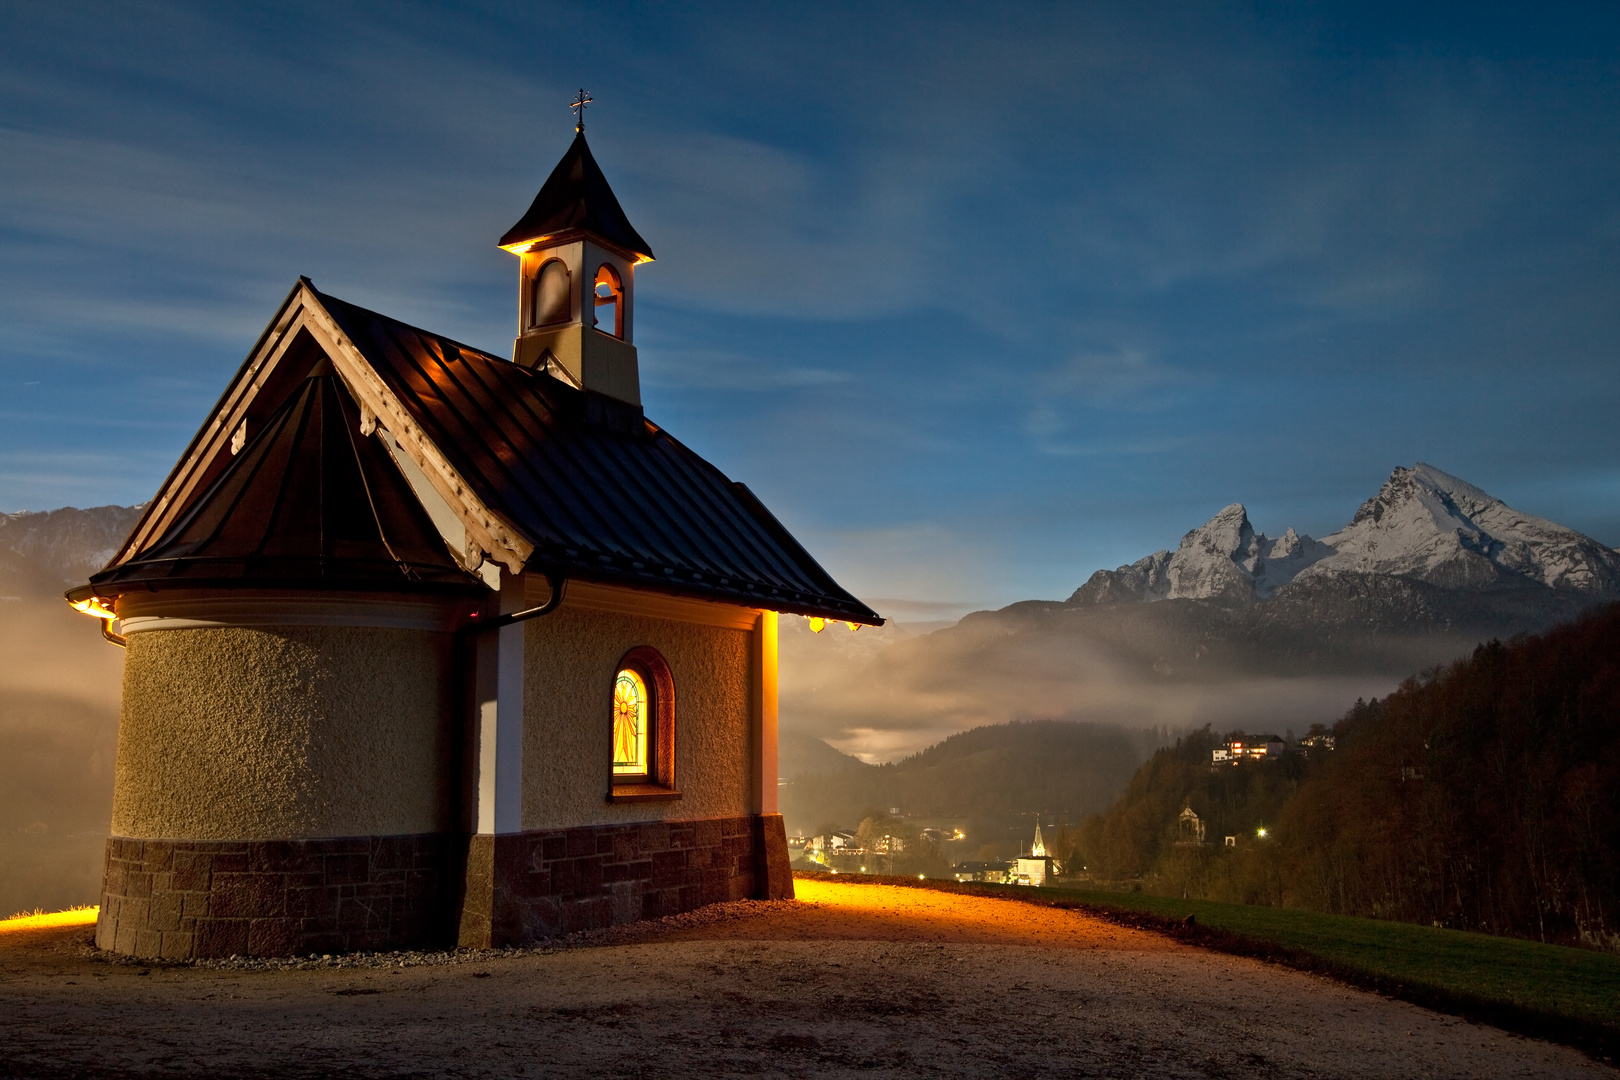 Abend im Berchtesgadener Land